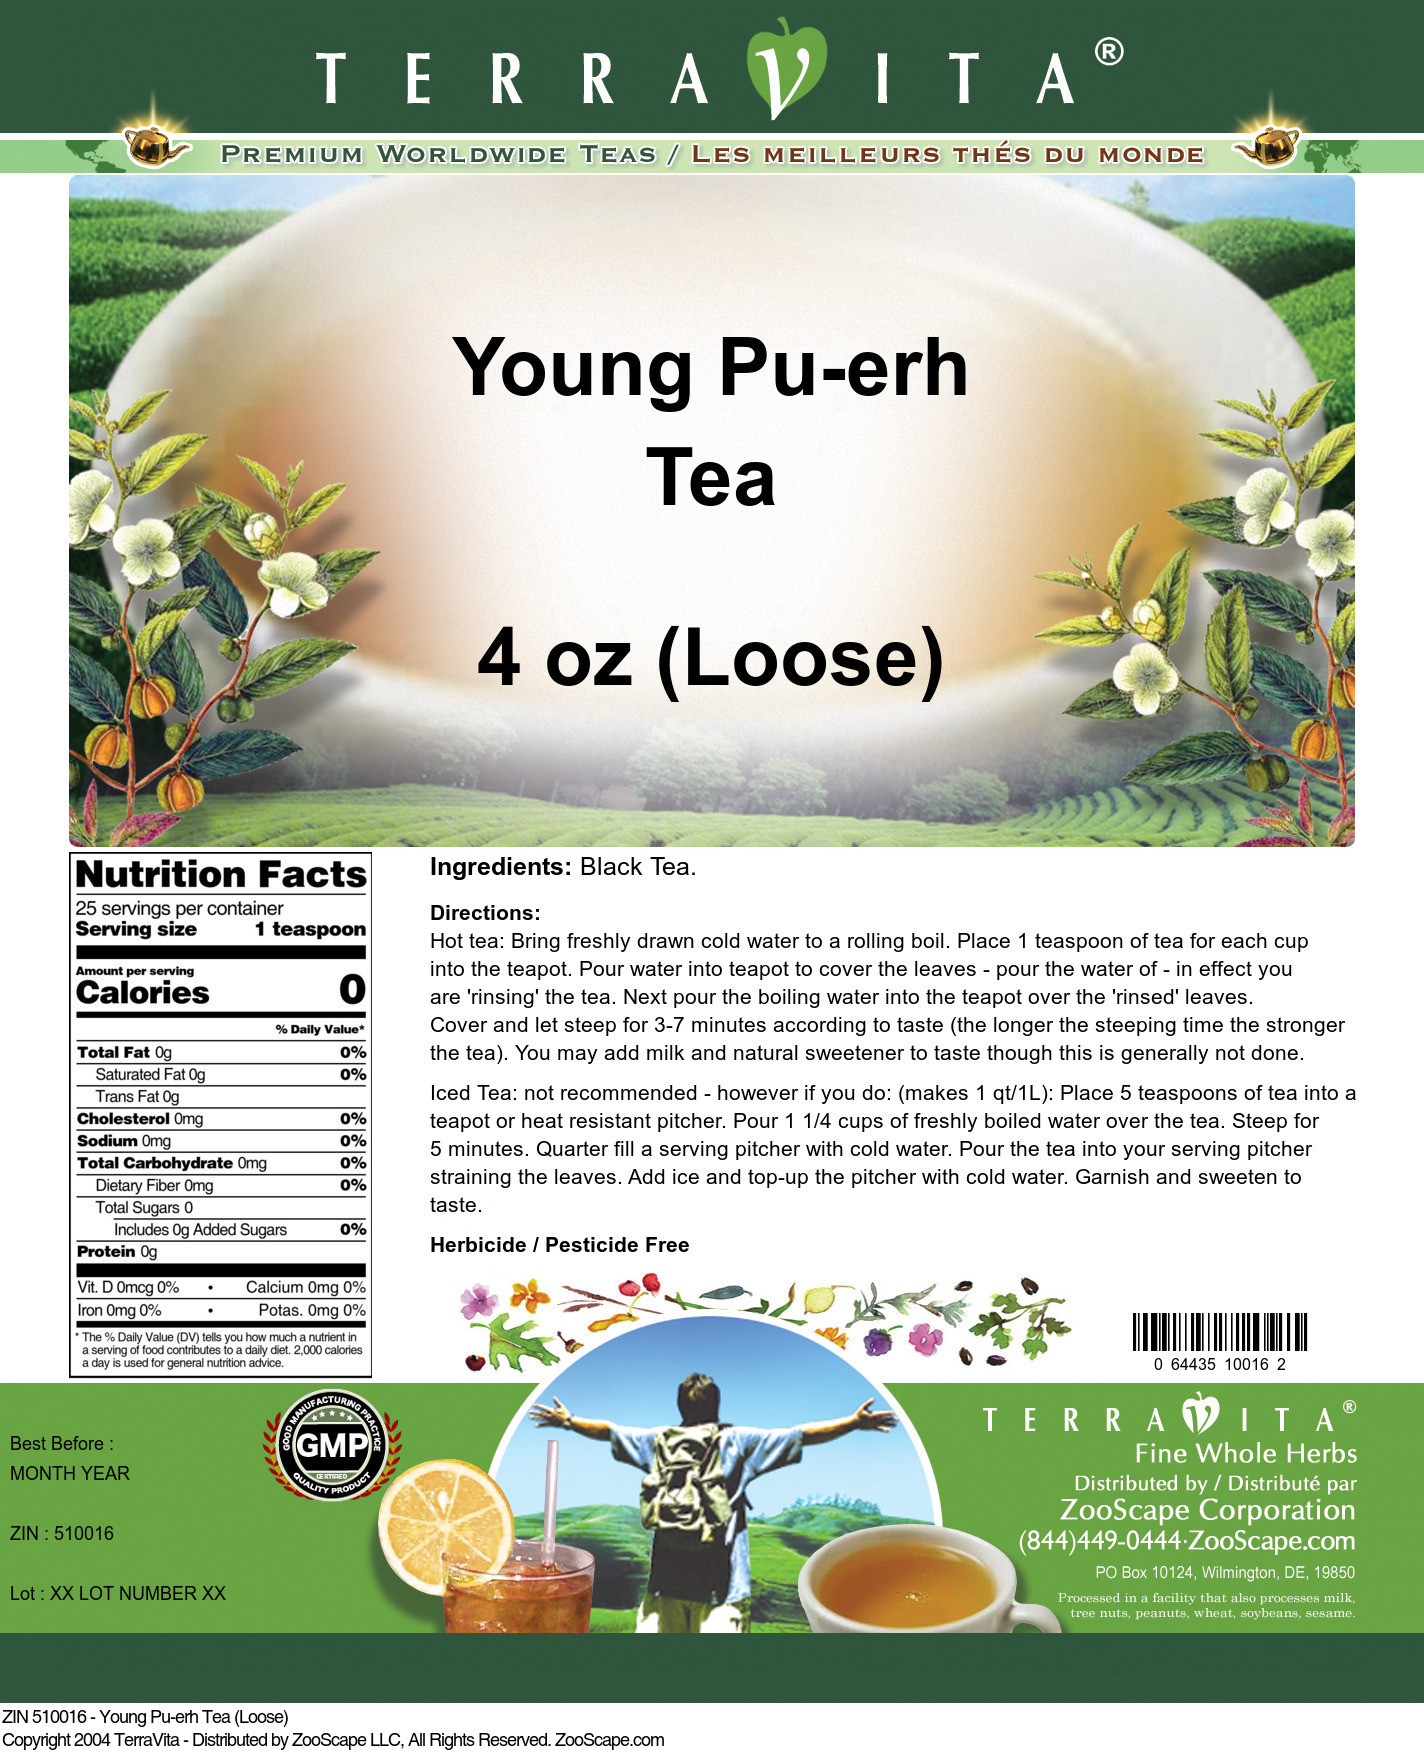 Young Pu-erh Tea (Loose) - Label